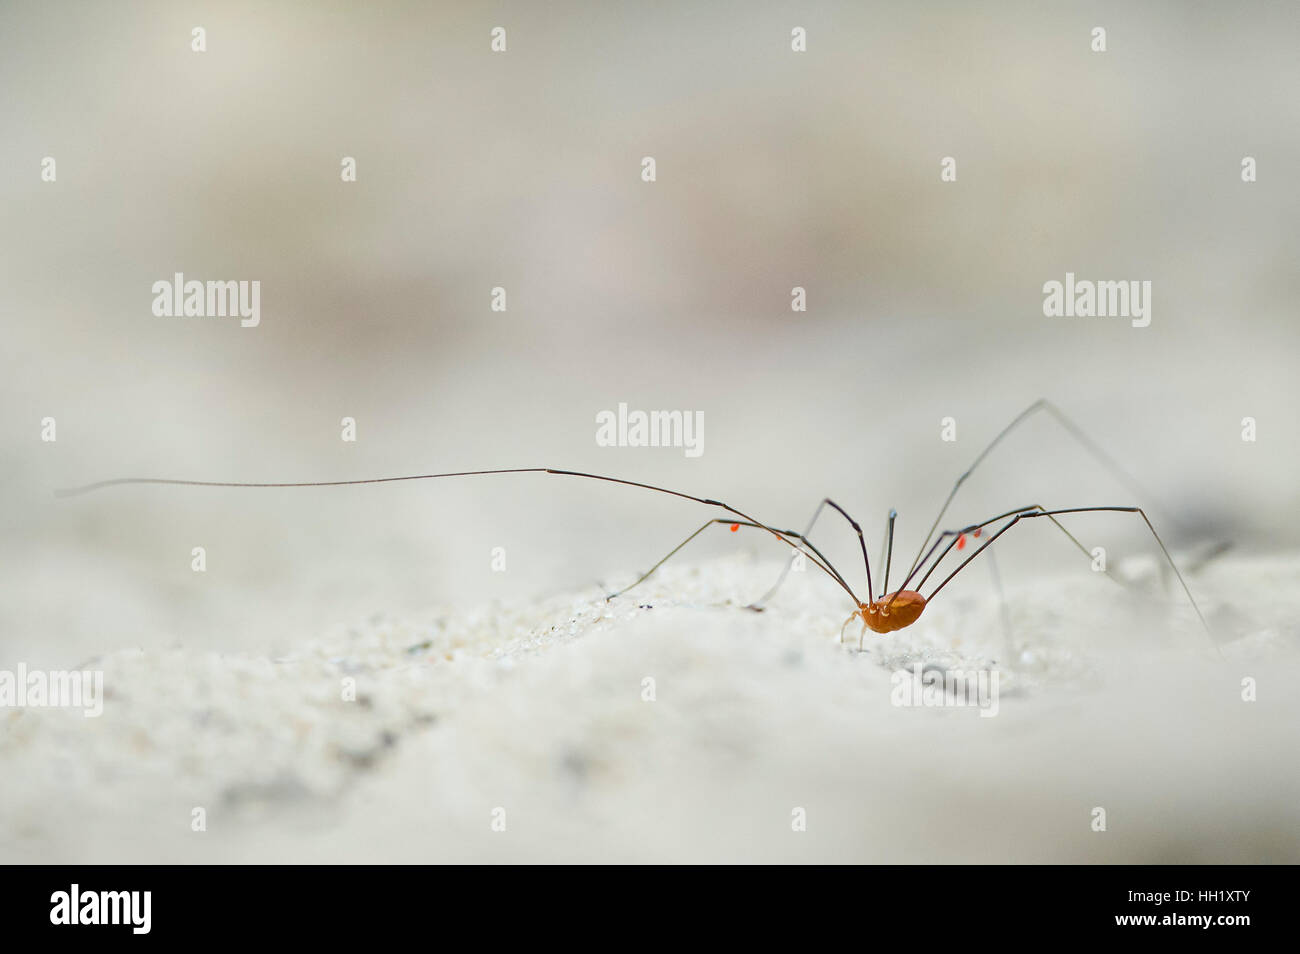 Eine sehr langbeinige Spinne kriecht über weißen Sand. Stockfoto